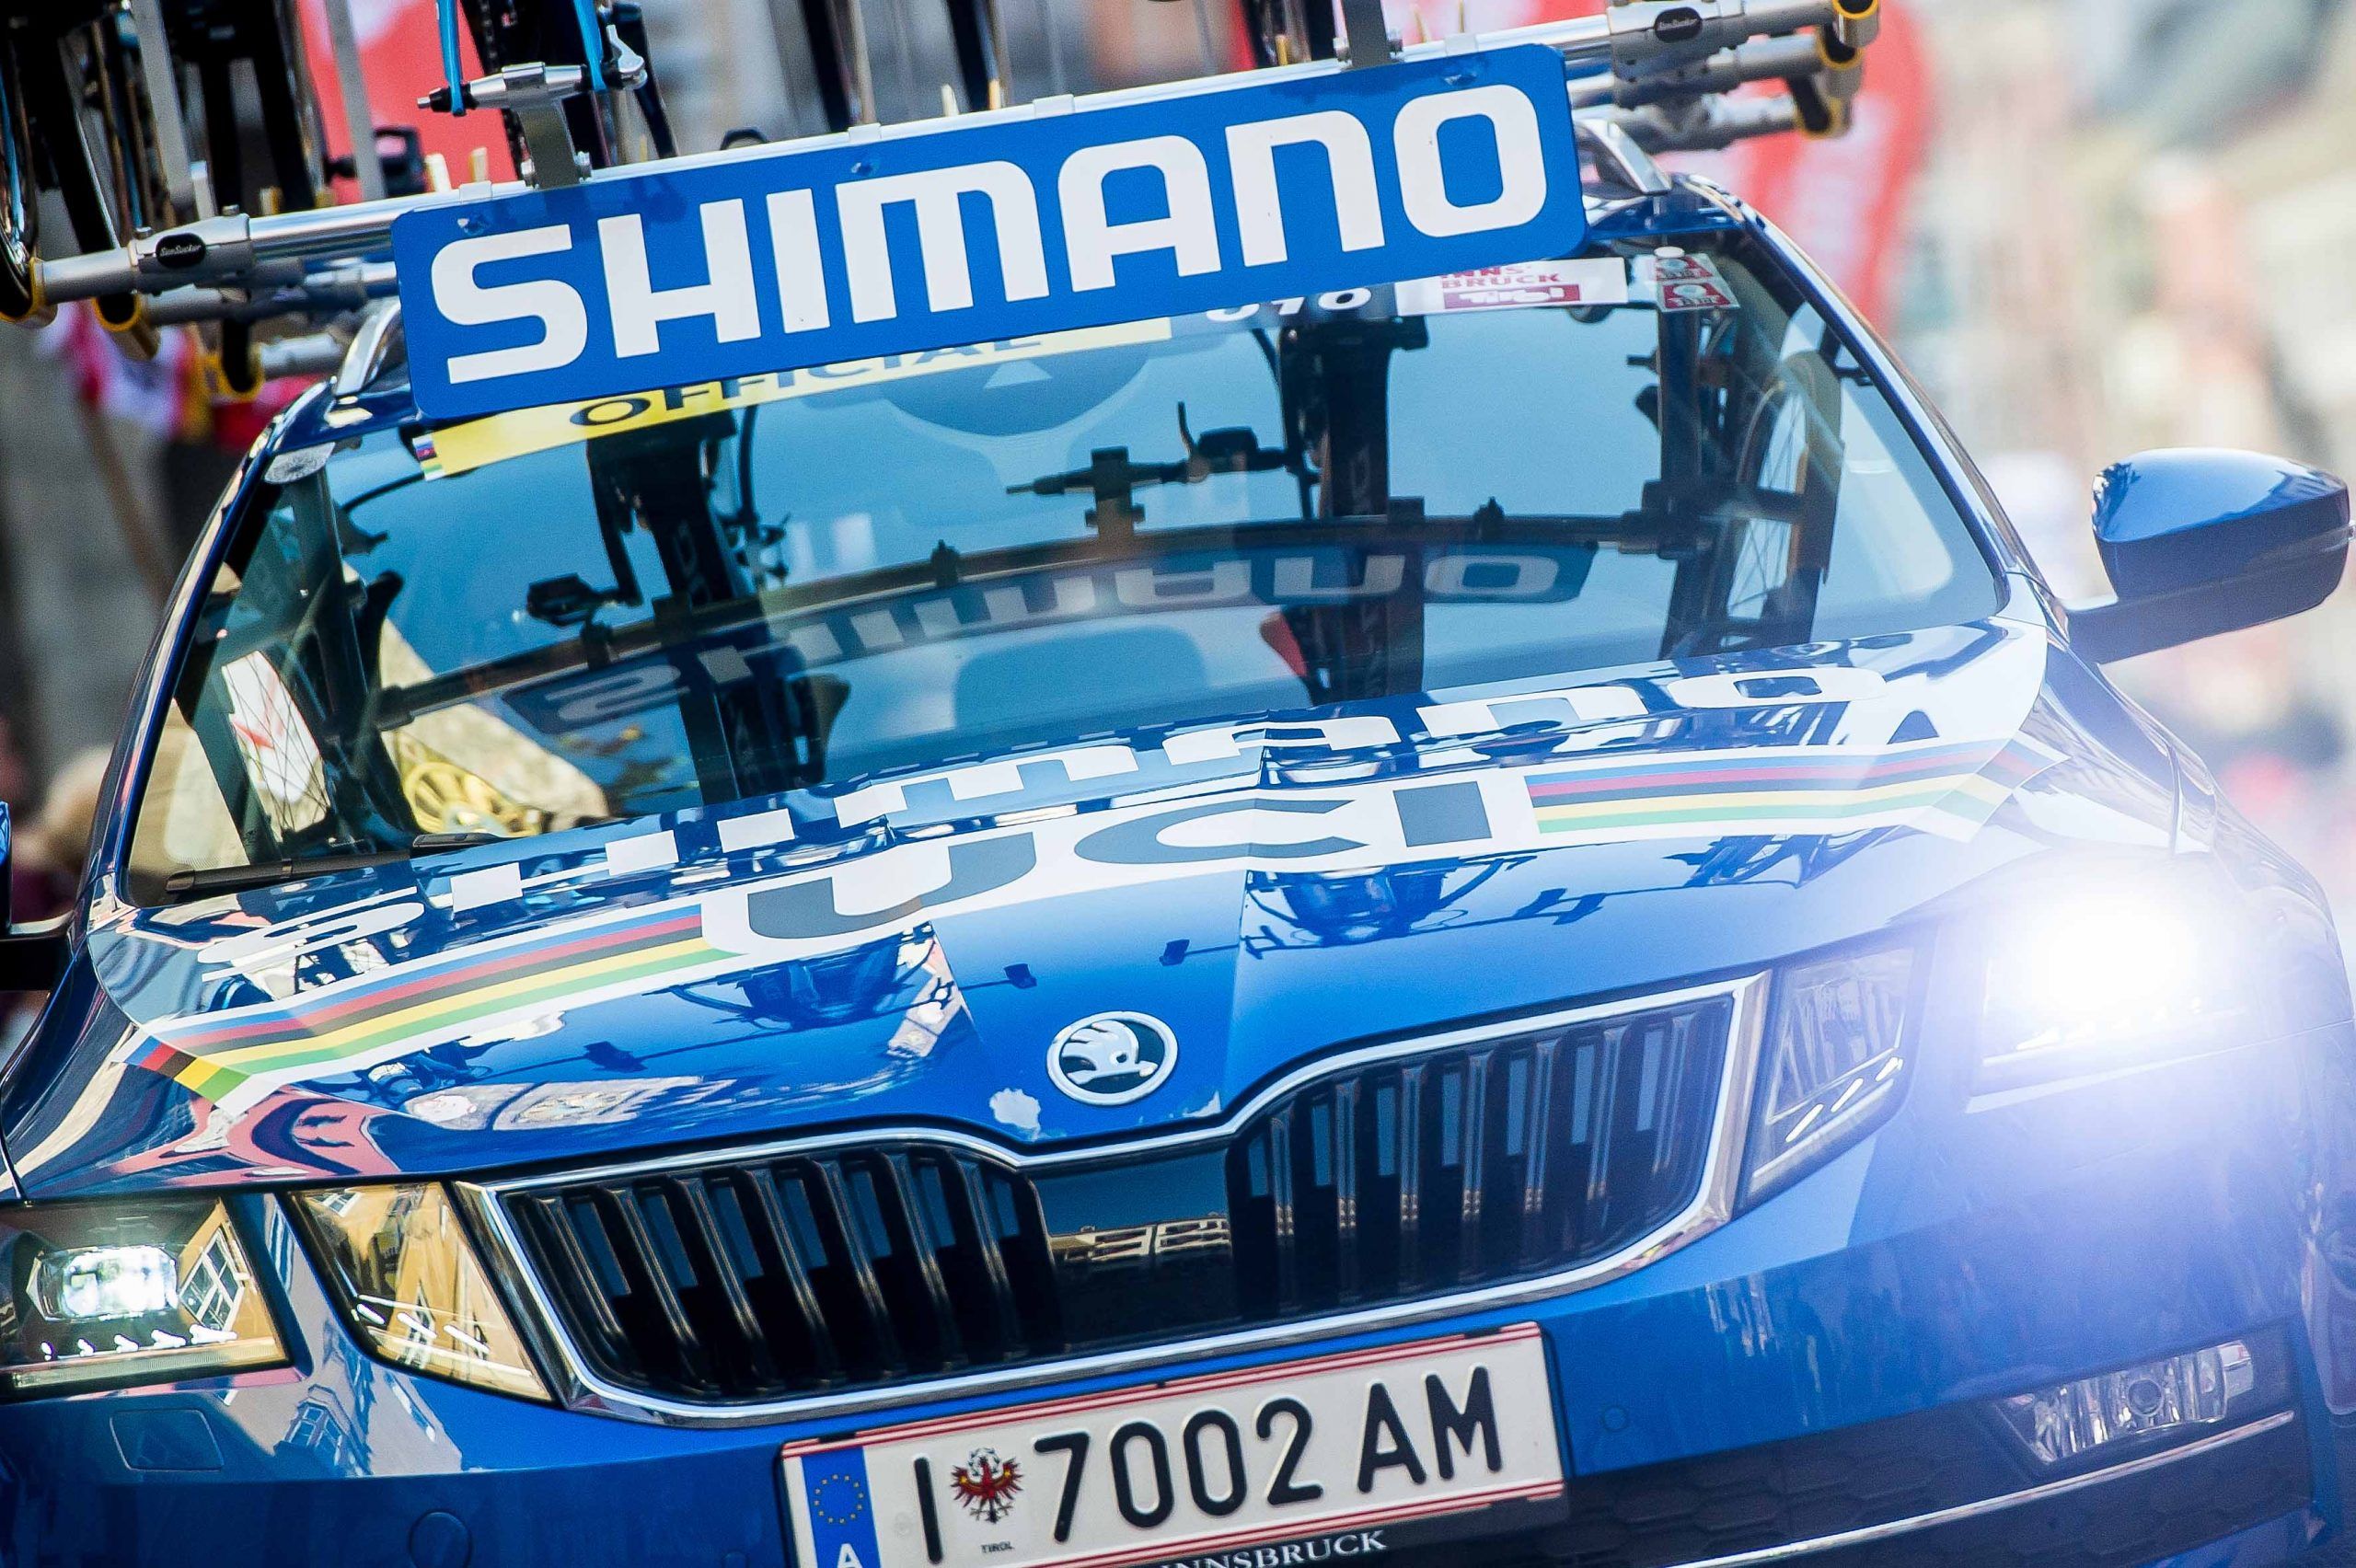 Shimano Tour de Francia